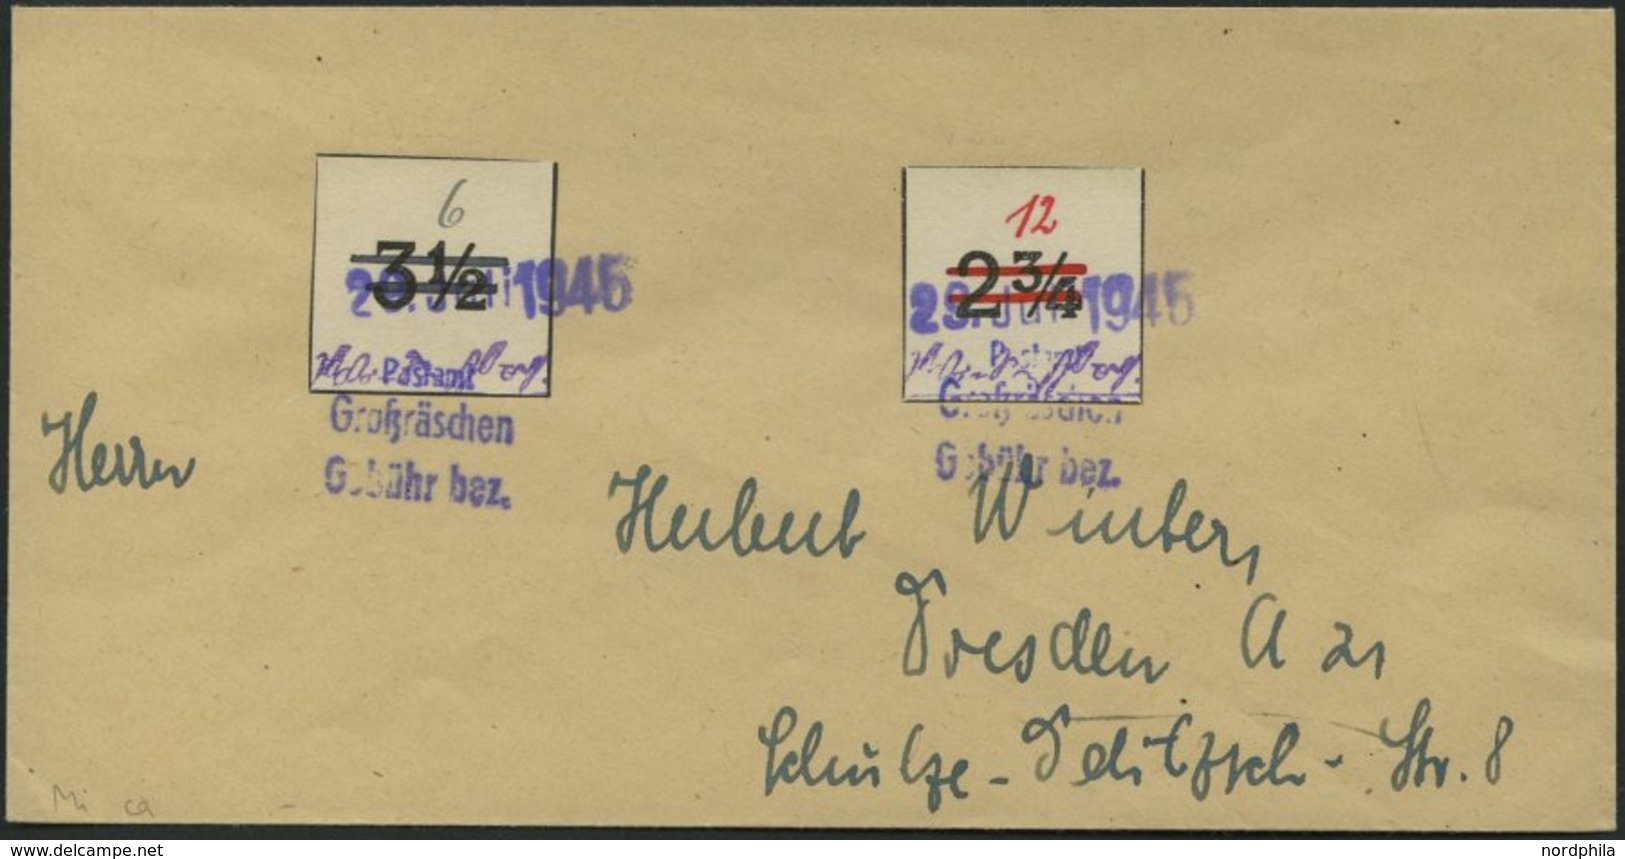 GROSSRÄSCHEN-VORLÄUFER V 22IU,V 26U BRIEF, 1945, 6 Pf. Wertziffer Schwarz Statt Rot, Ungezähnt, Mit 12 Pf. Rot, Ungezähn - Private & Local Mails